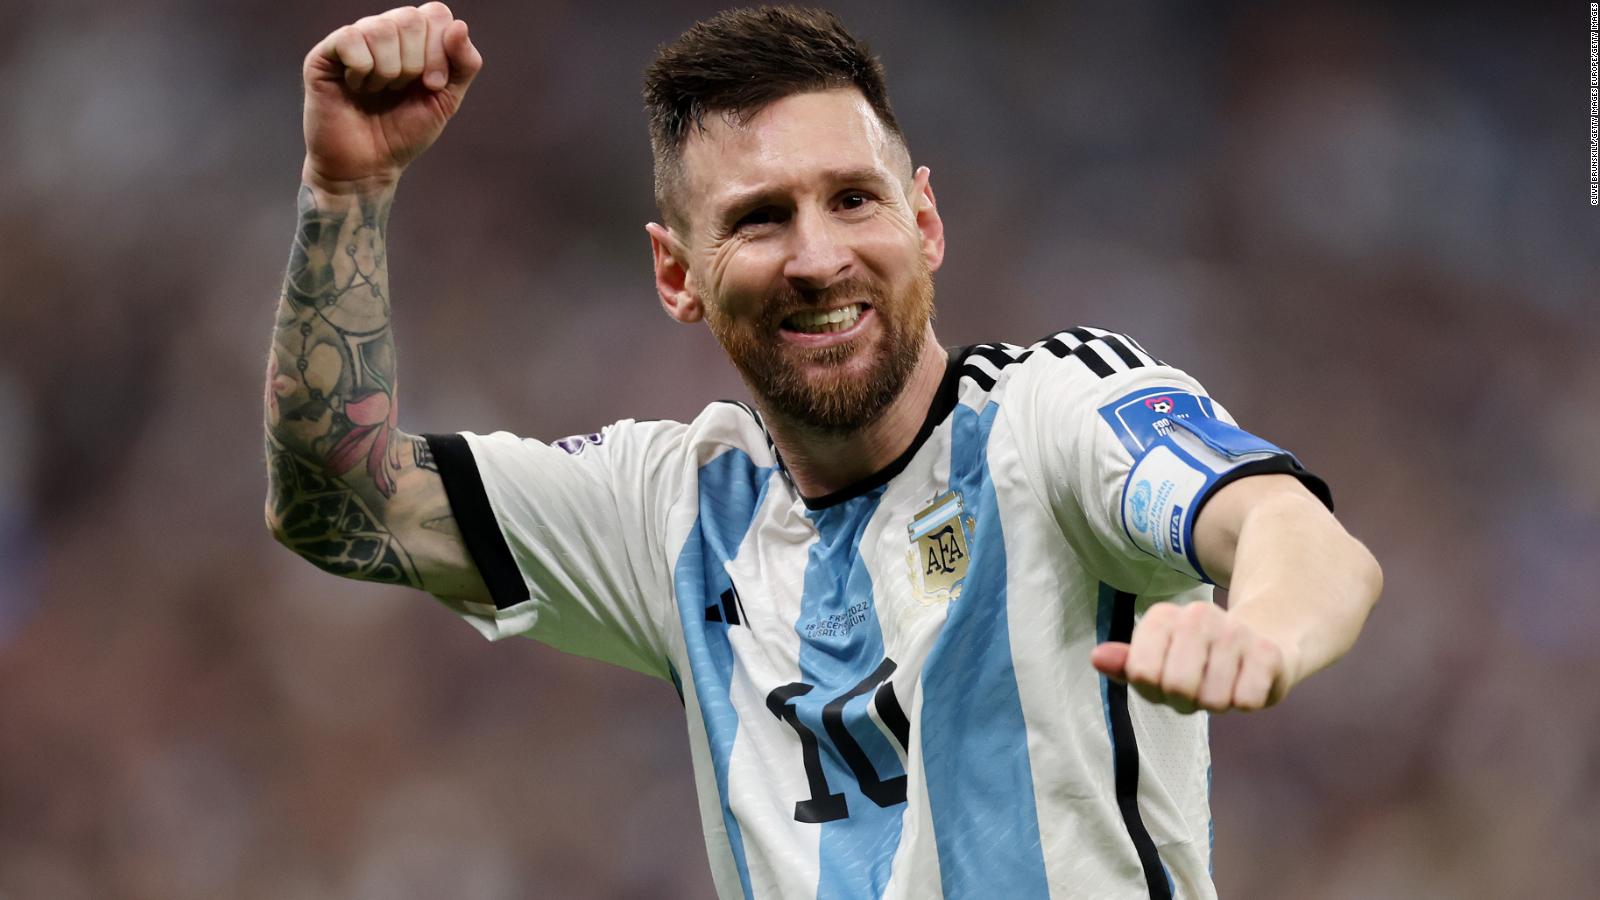 La influencia de Messi: se duplicaron las reproducciones de ‘Argentina, 1985’ tras su referencia en Instagram |  Video